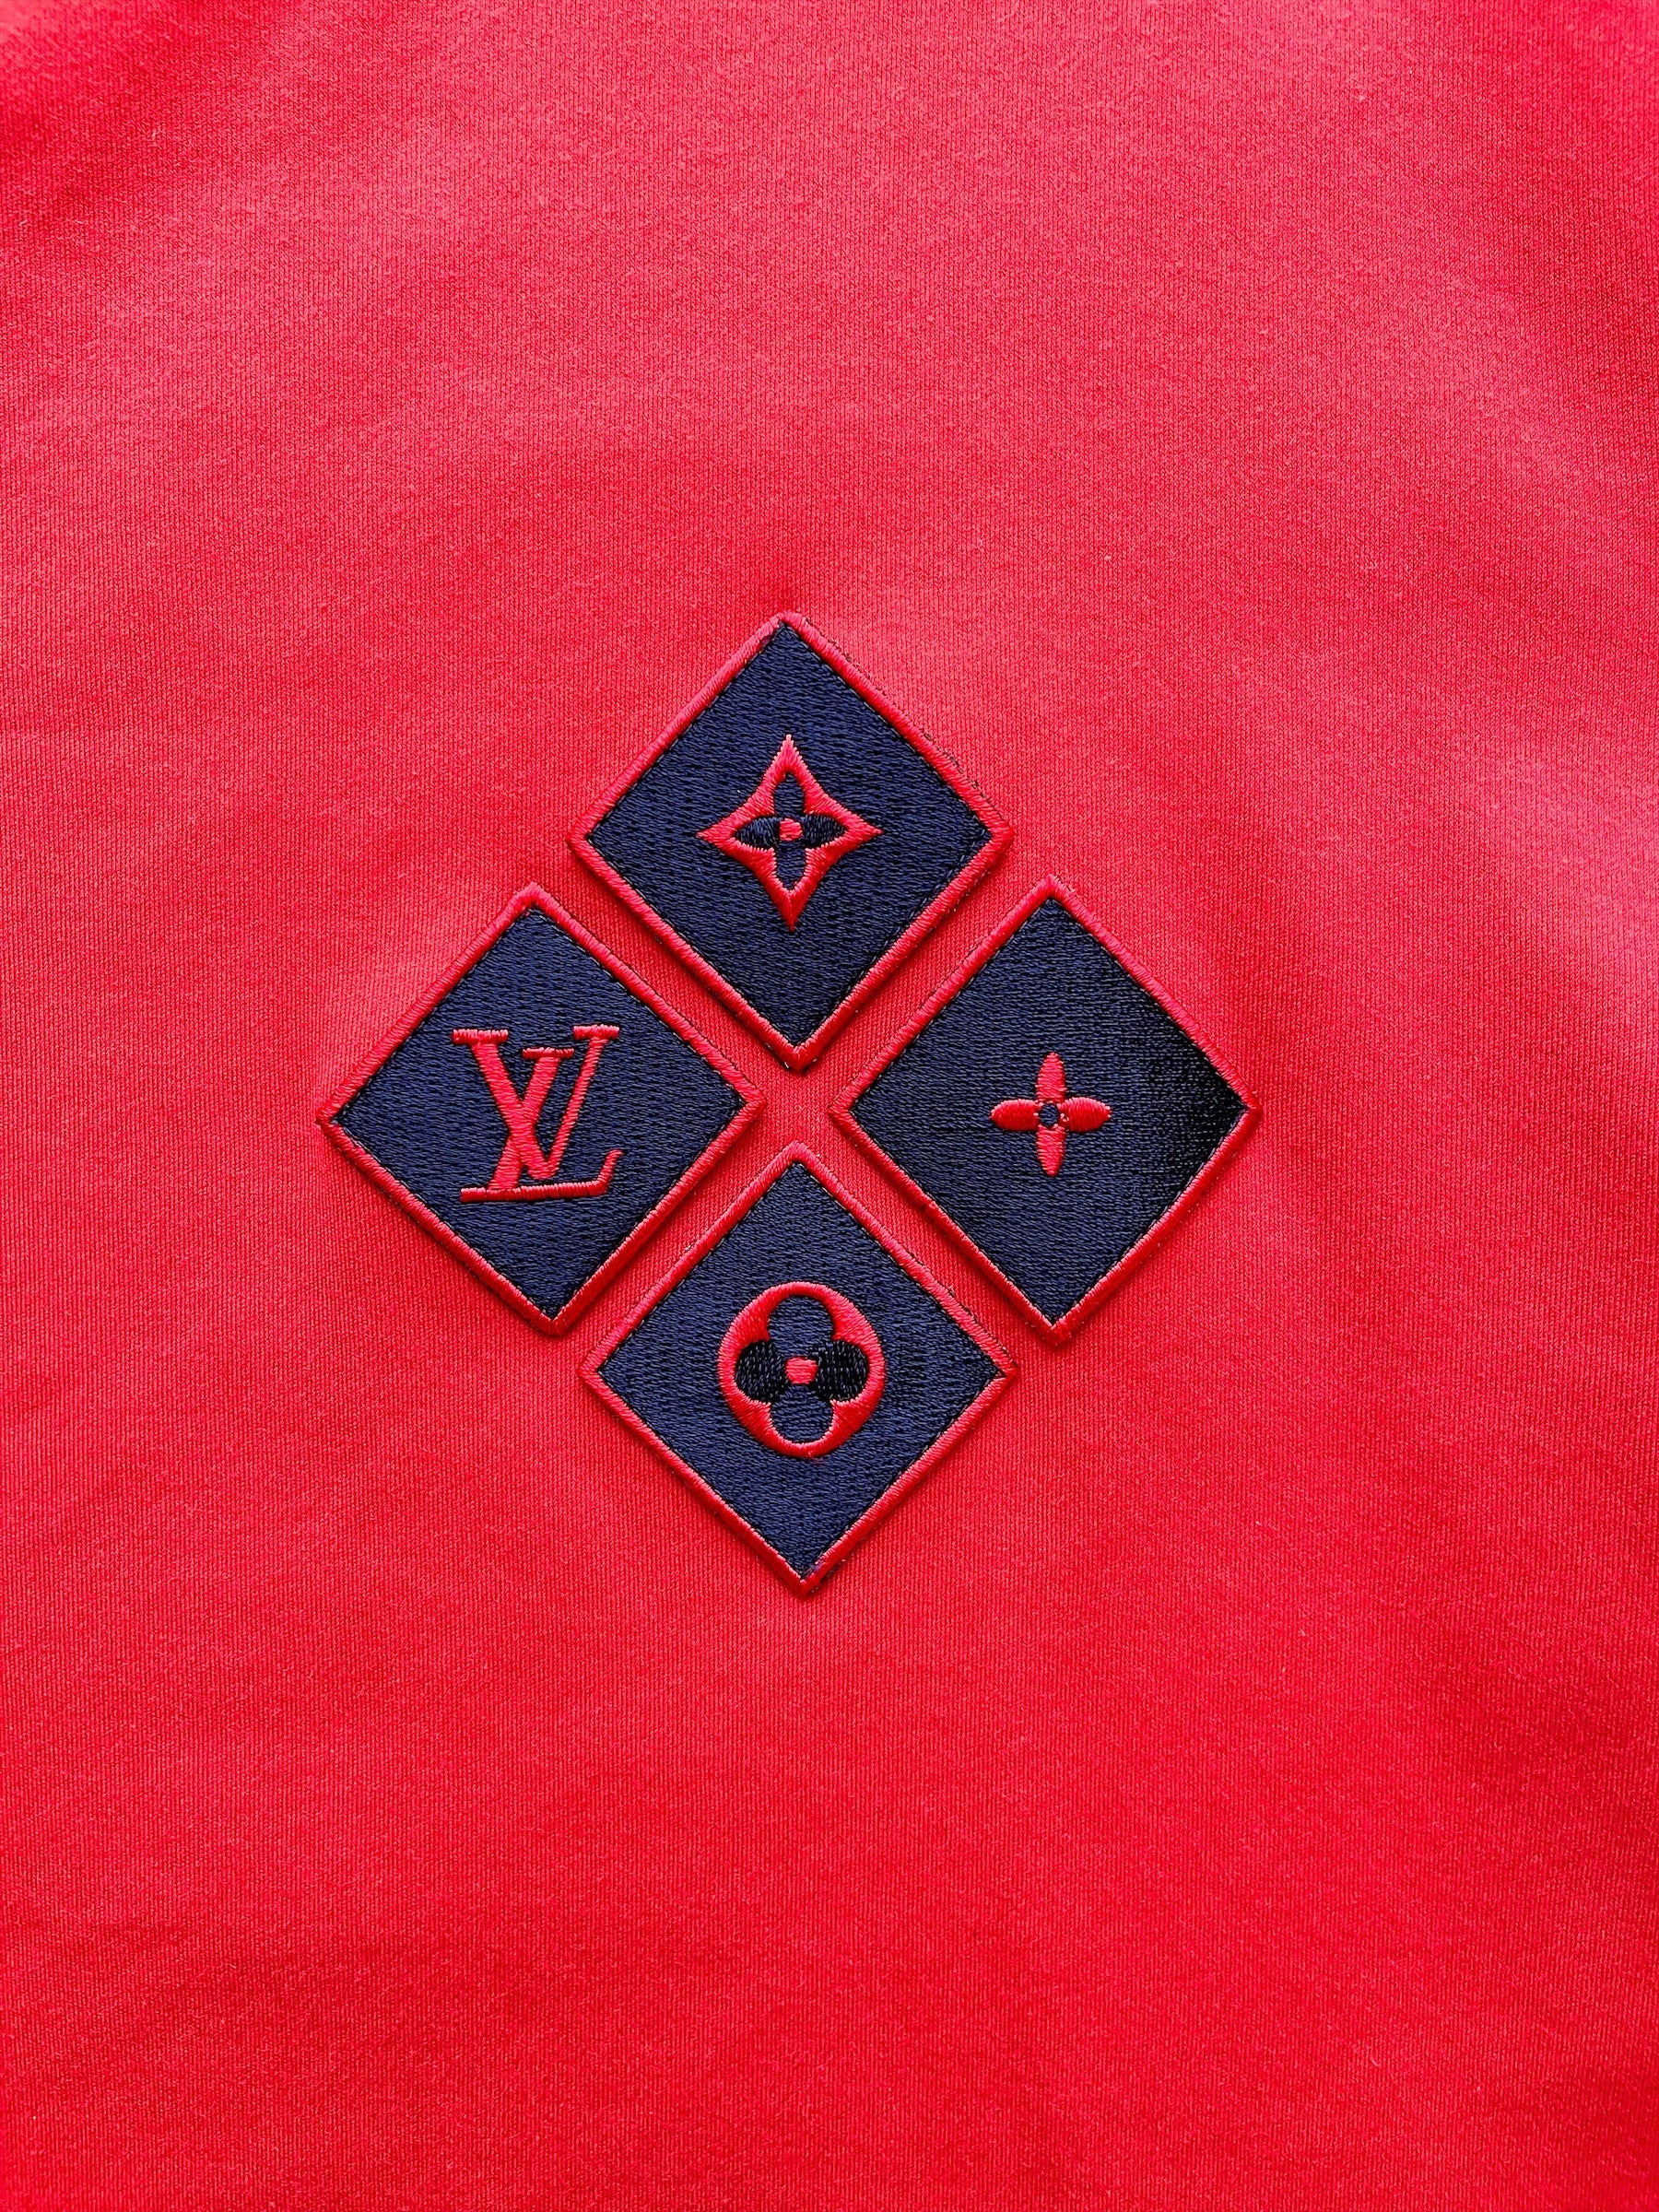  Louis Vuitton Embroidered Logo Applique, Black Heart